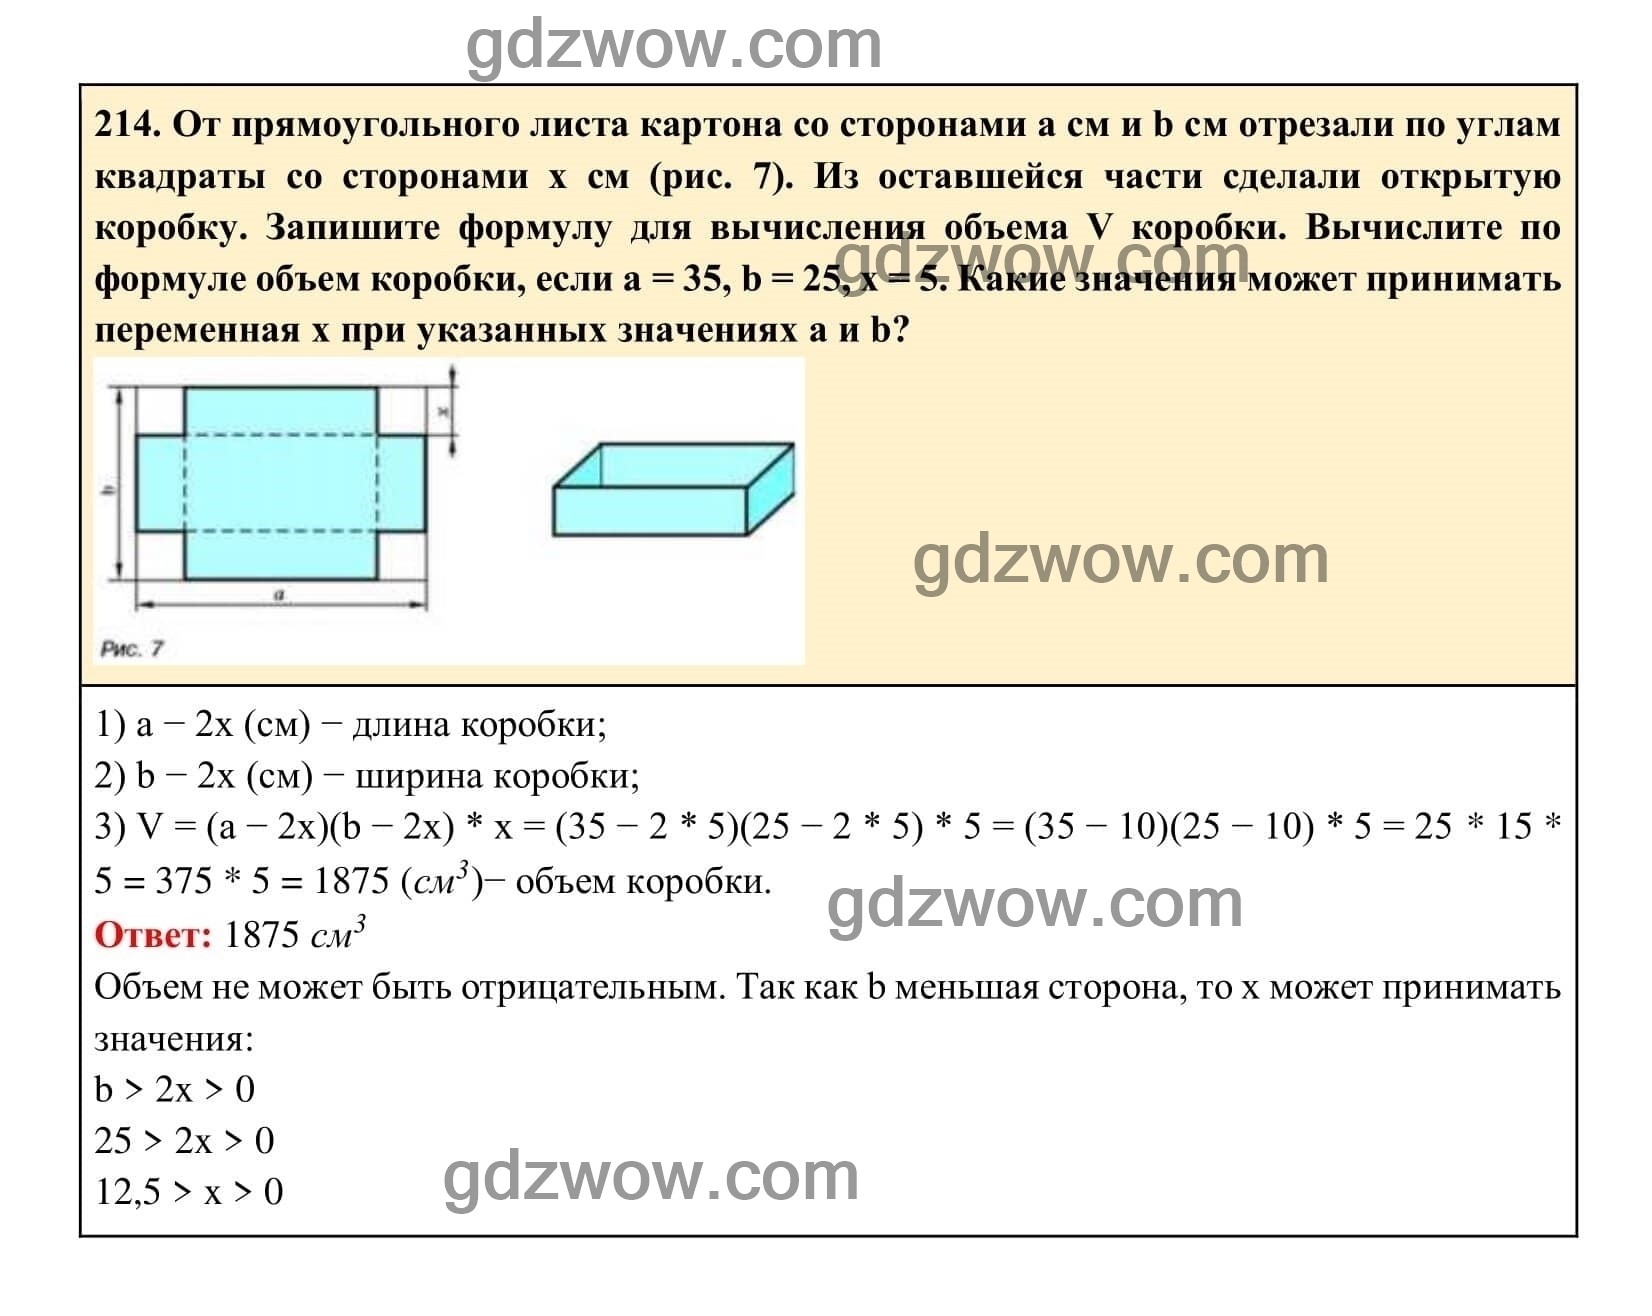 Упражнение 214 - ГДЗ по Алгебре 7 класс Учебник Макарычев (решебник) - GDZwow